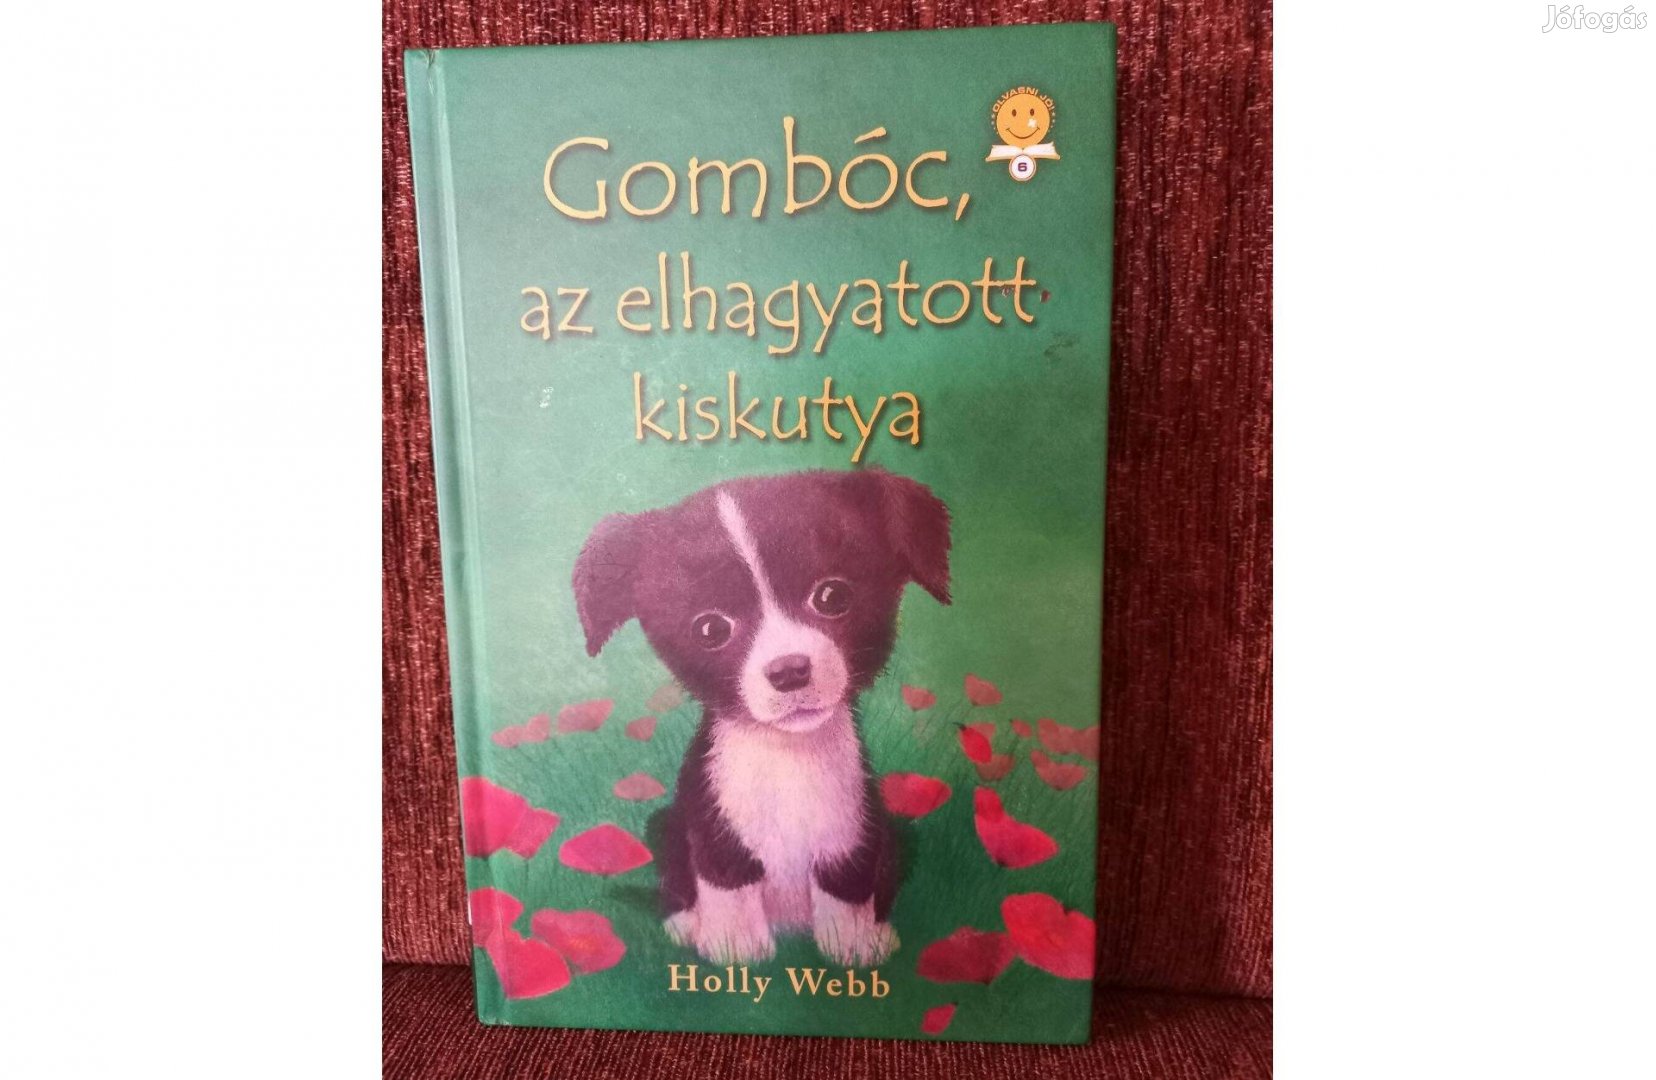 Gombóc az elhagyatott kiskutya című könyv Miskolcon eladó